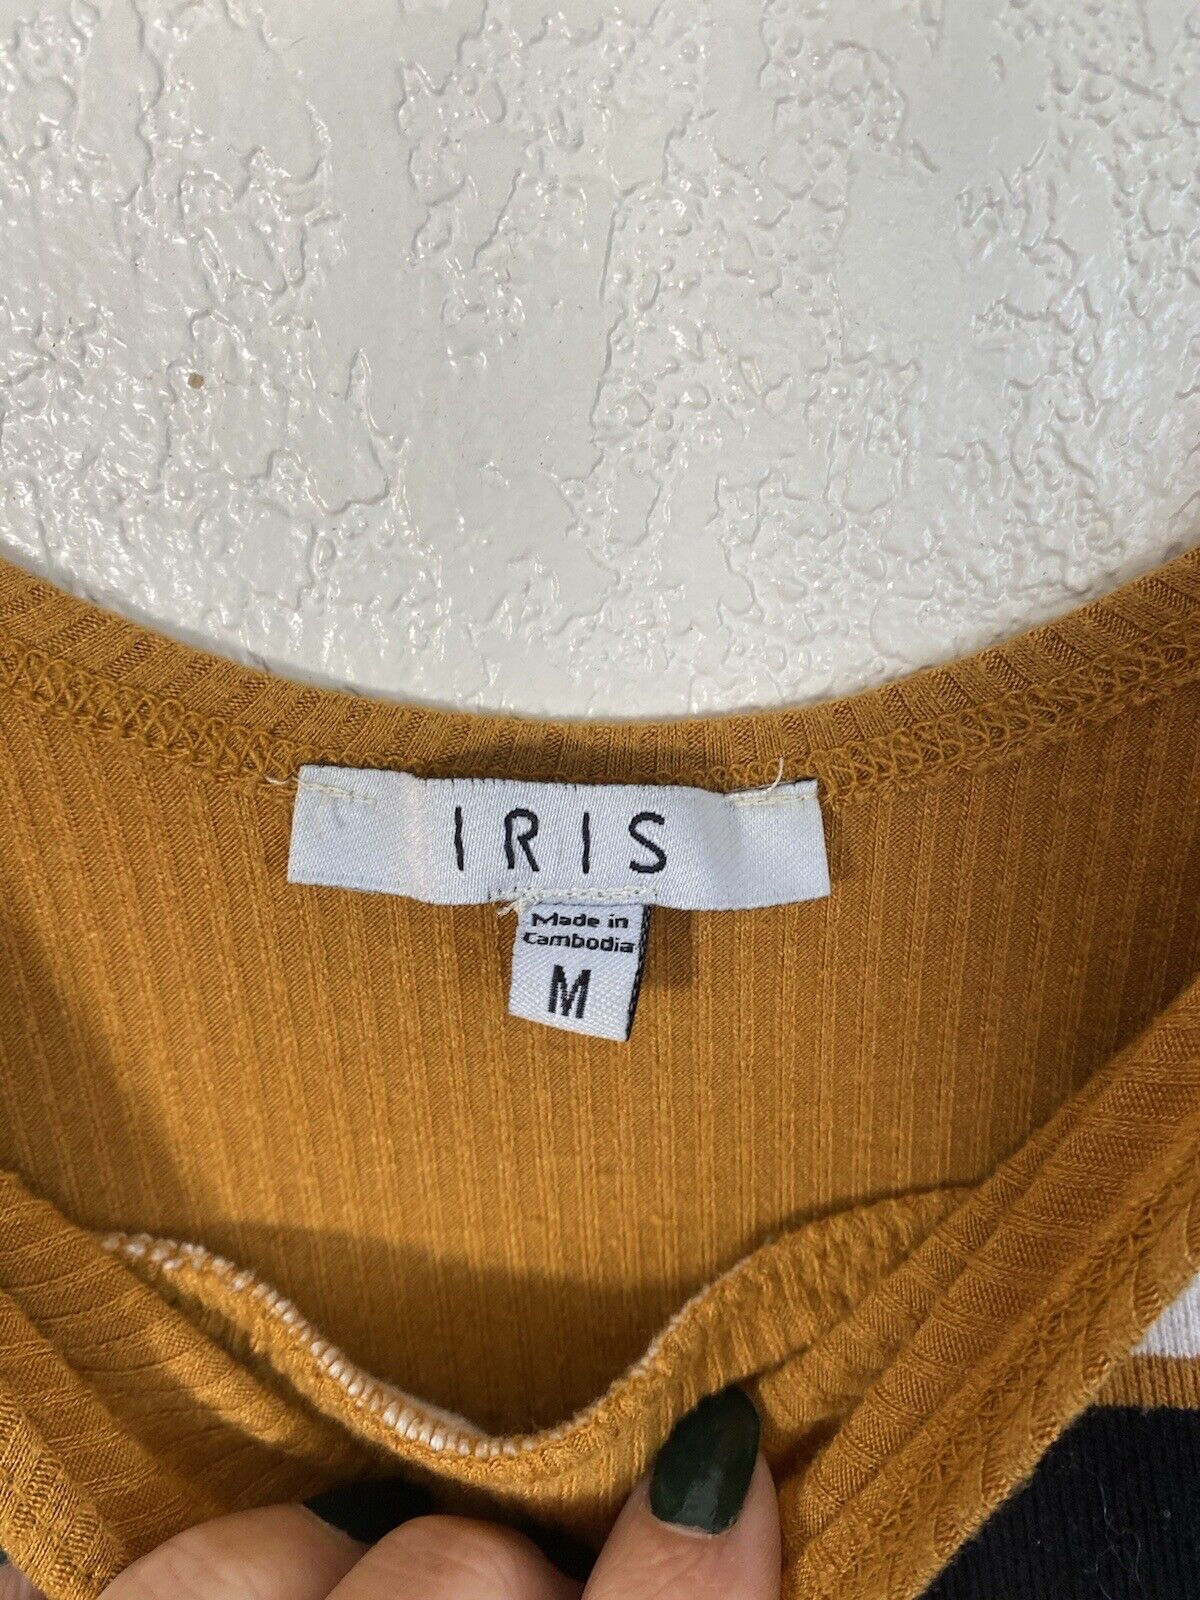 Mustard Yellow Retro Bodysuit - Iris - Women’s Medium